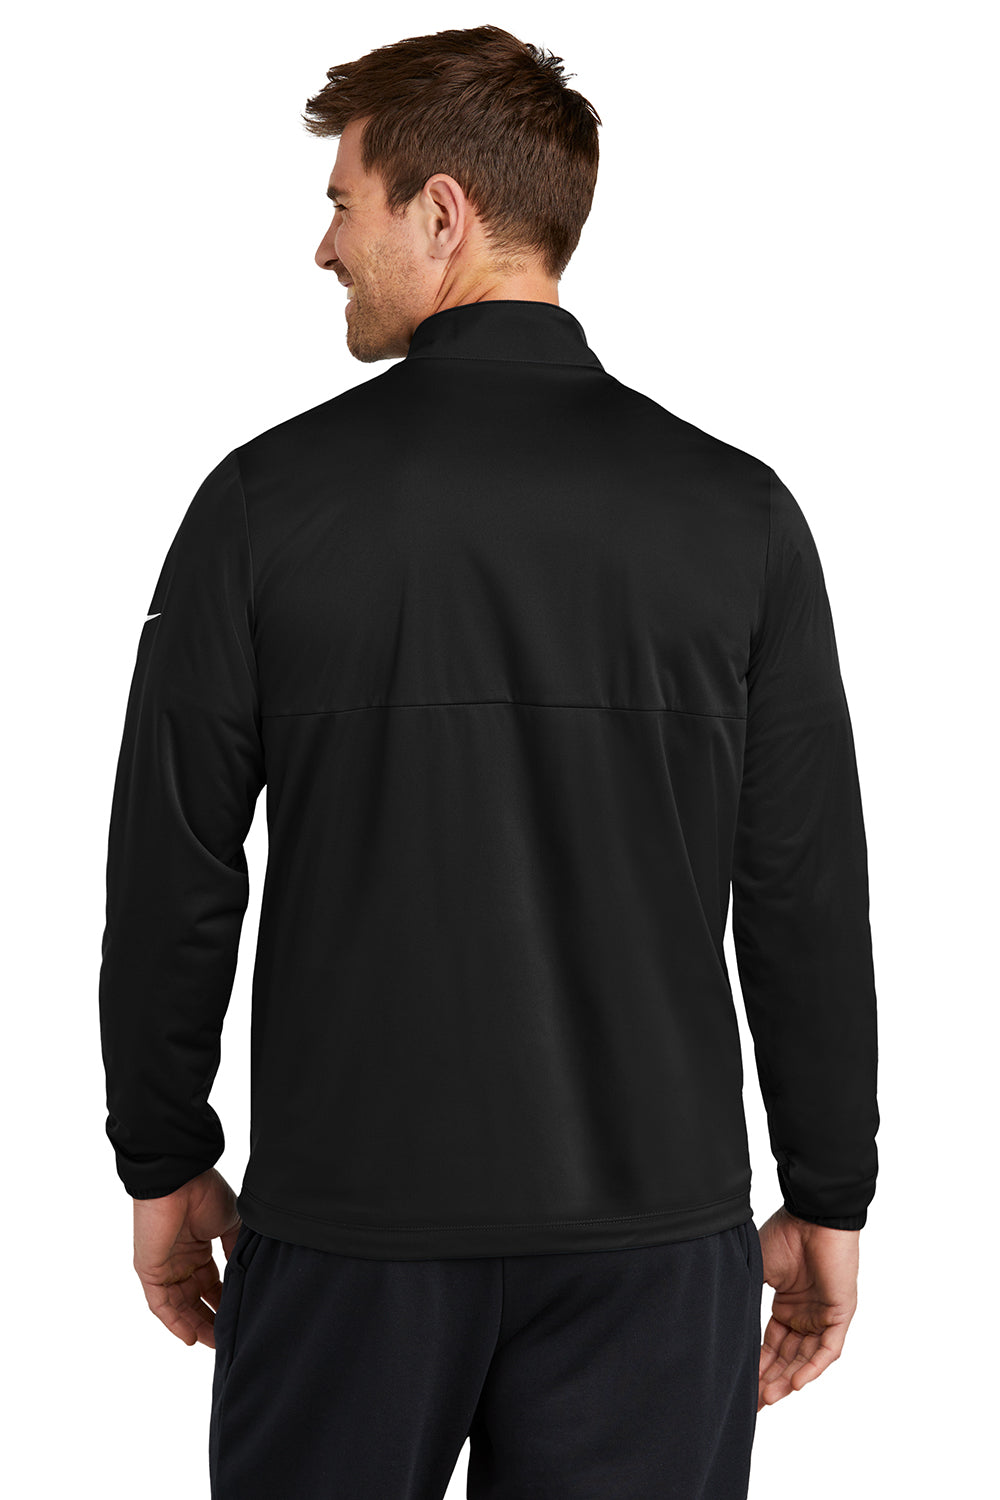 Nike NKDX6716 Mens Storm-Fit Wind & Water Resistant Full Zip Jacket Black Model Back